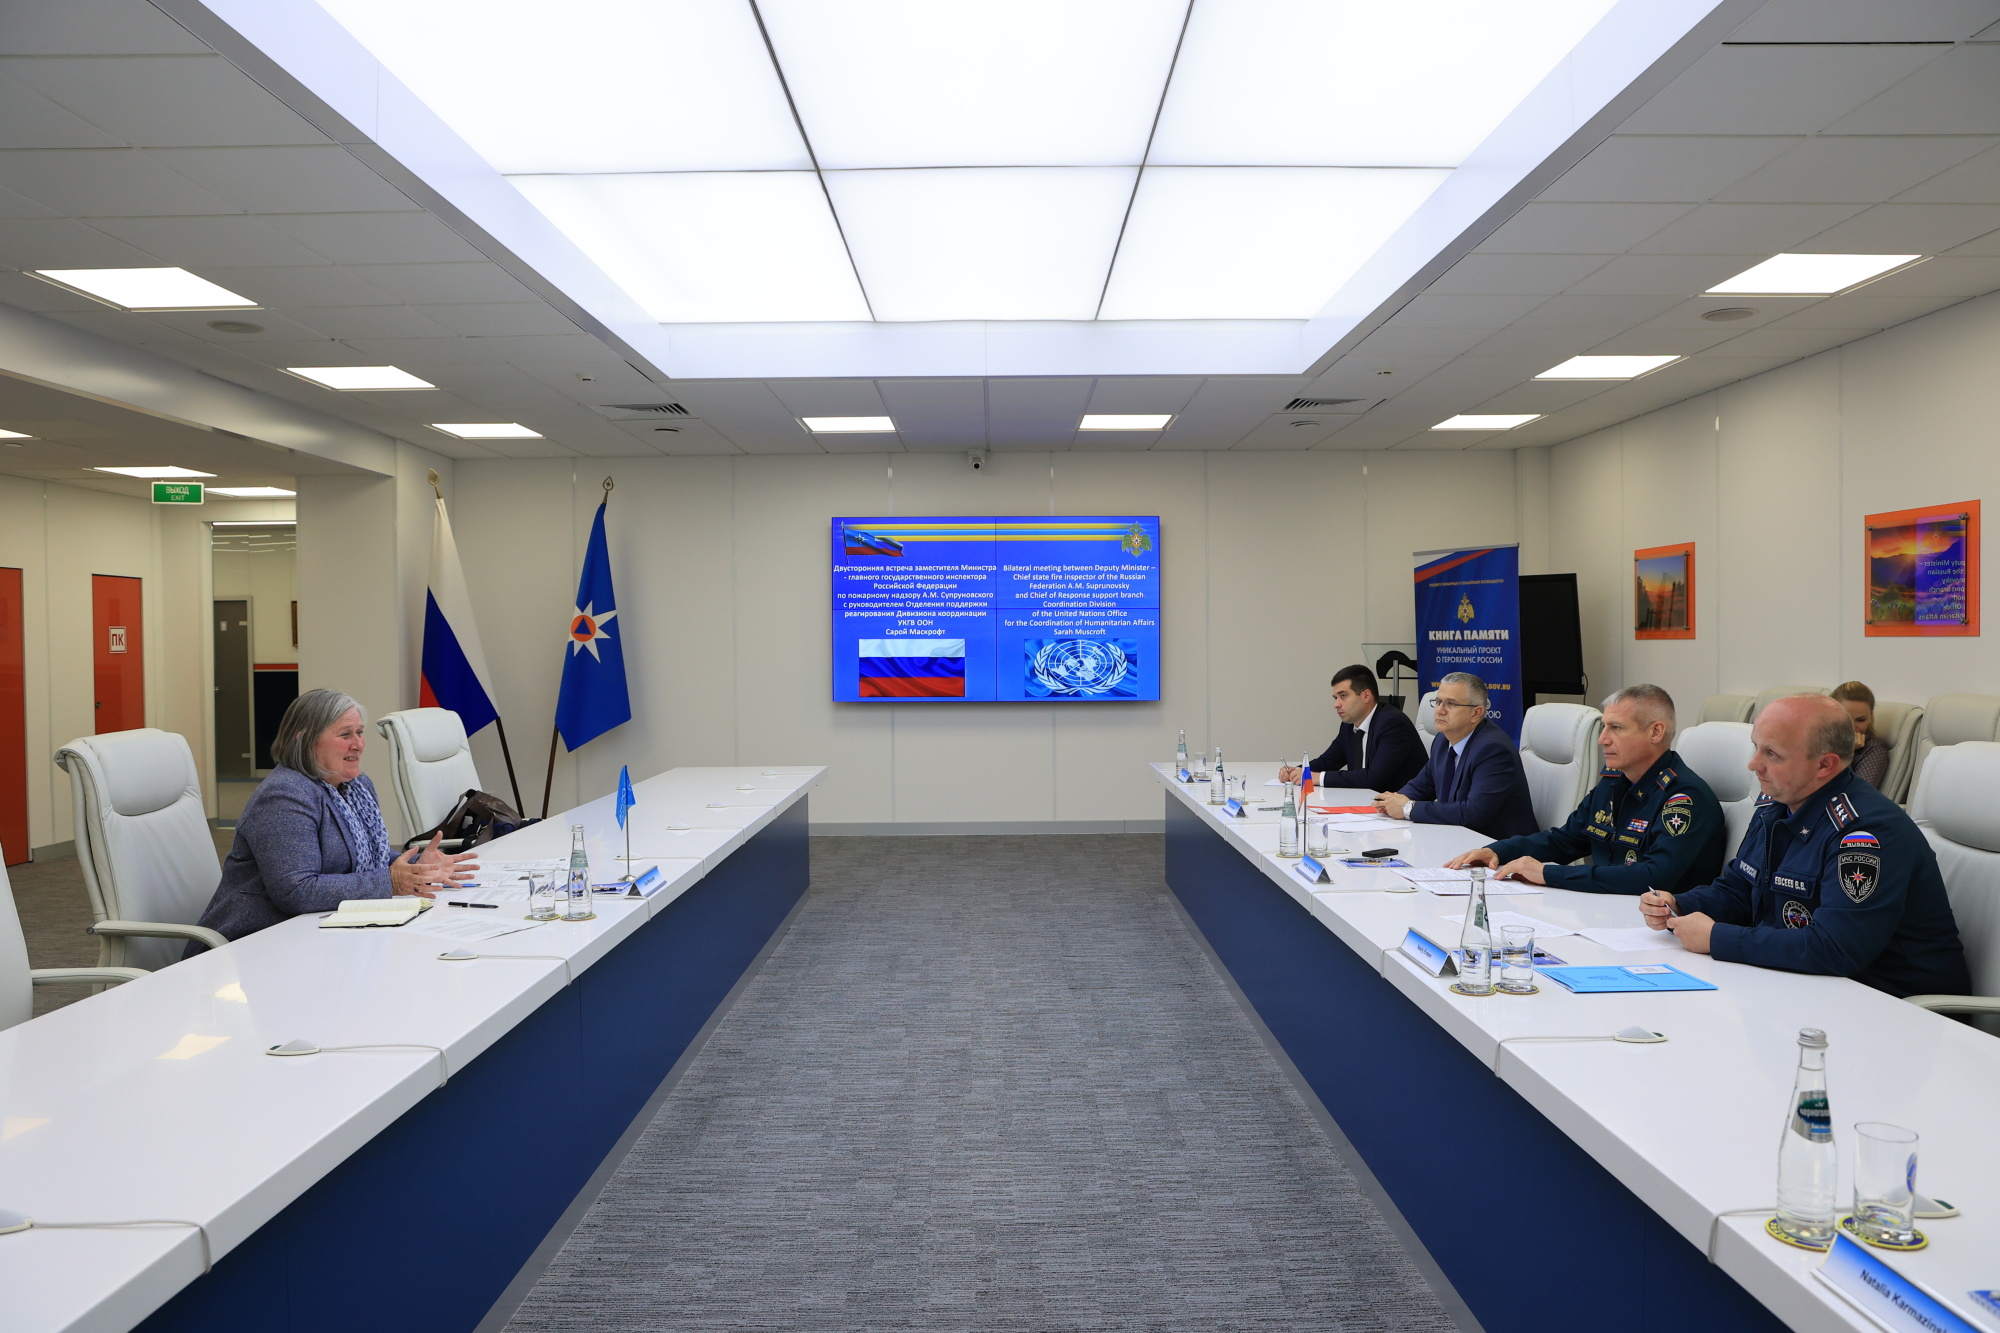 25-июня-МЧС-России-посетила-делегация-Управления-ООН-по-координации-гуманитарных-вопросов-(далее-—-УКГВ-ООН).